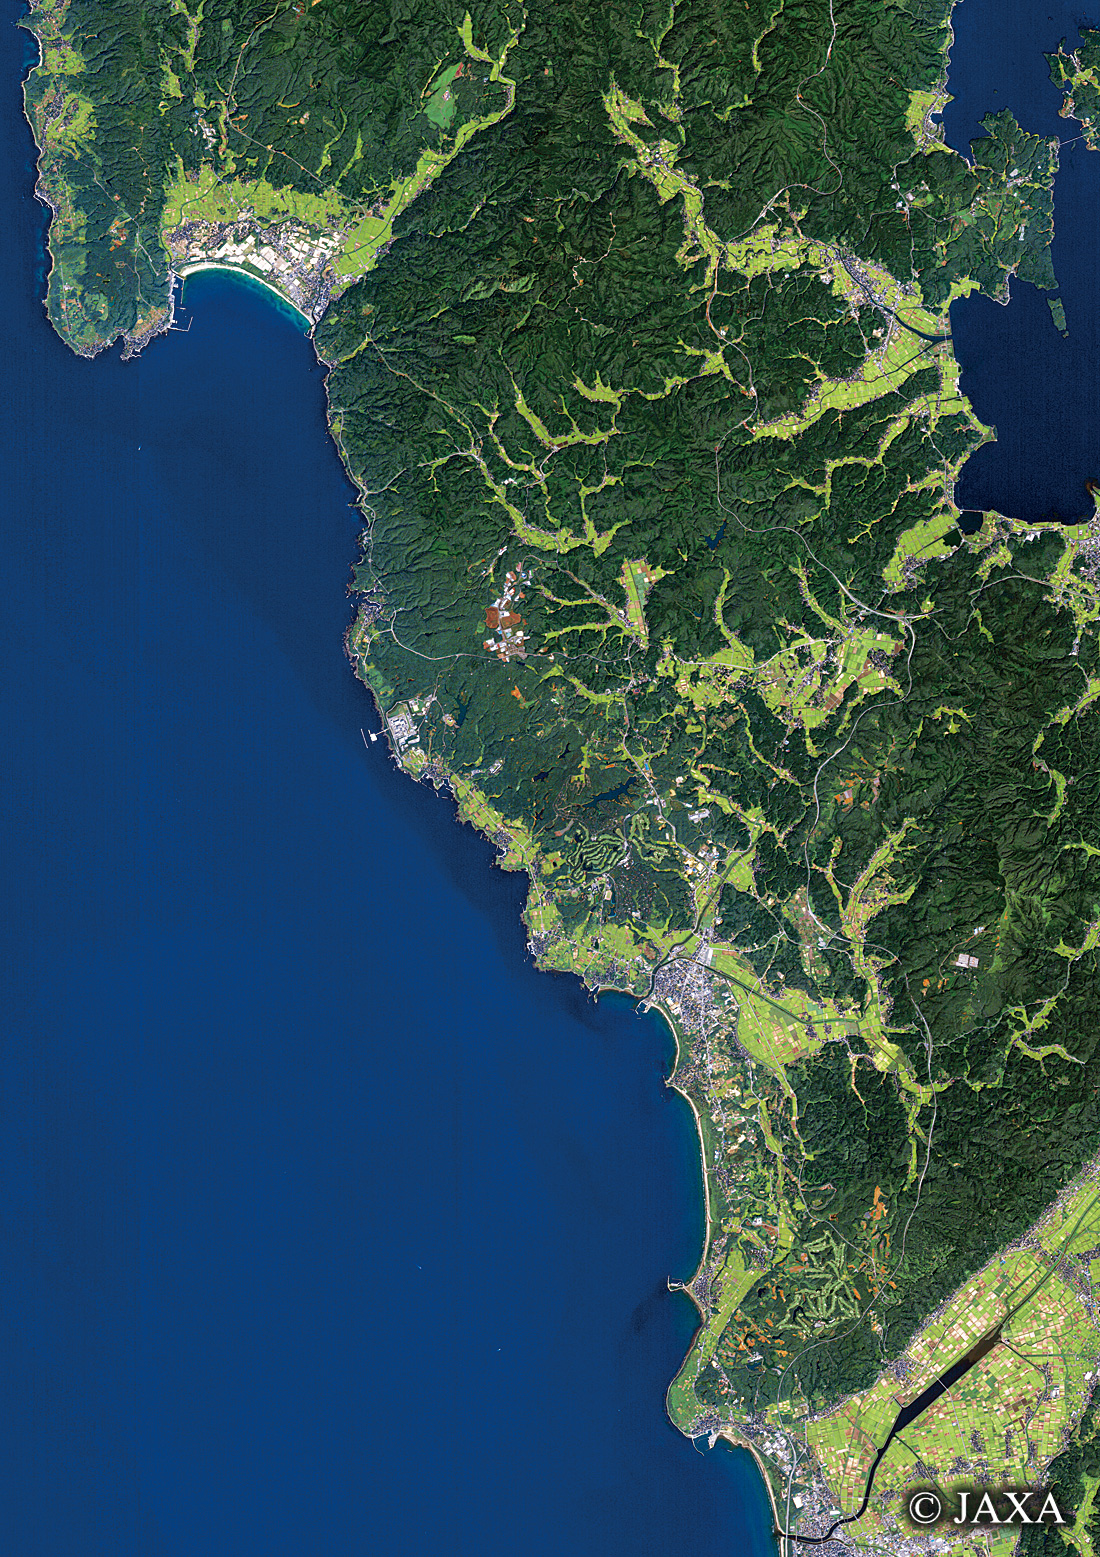 だいちから見た日本の都市 羽咋郡志賀町周辺:衛星画像